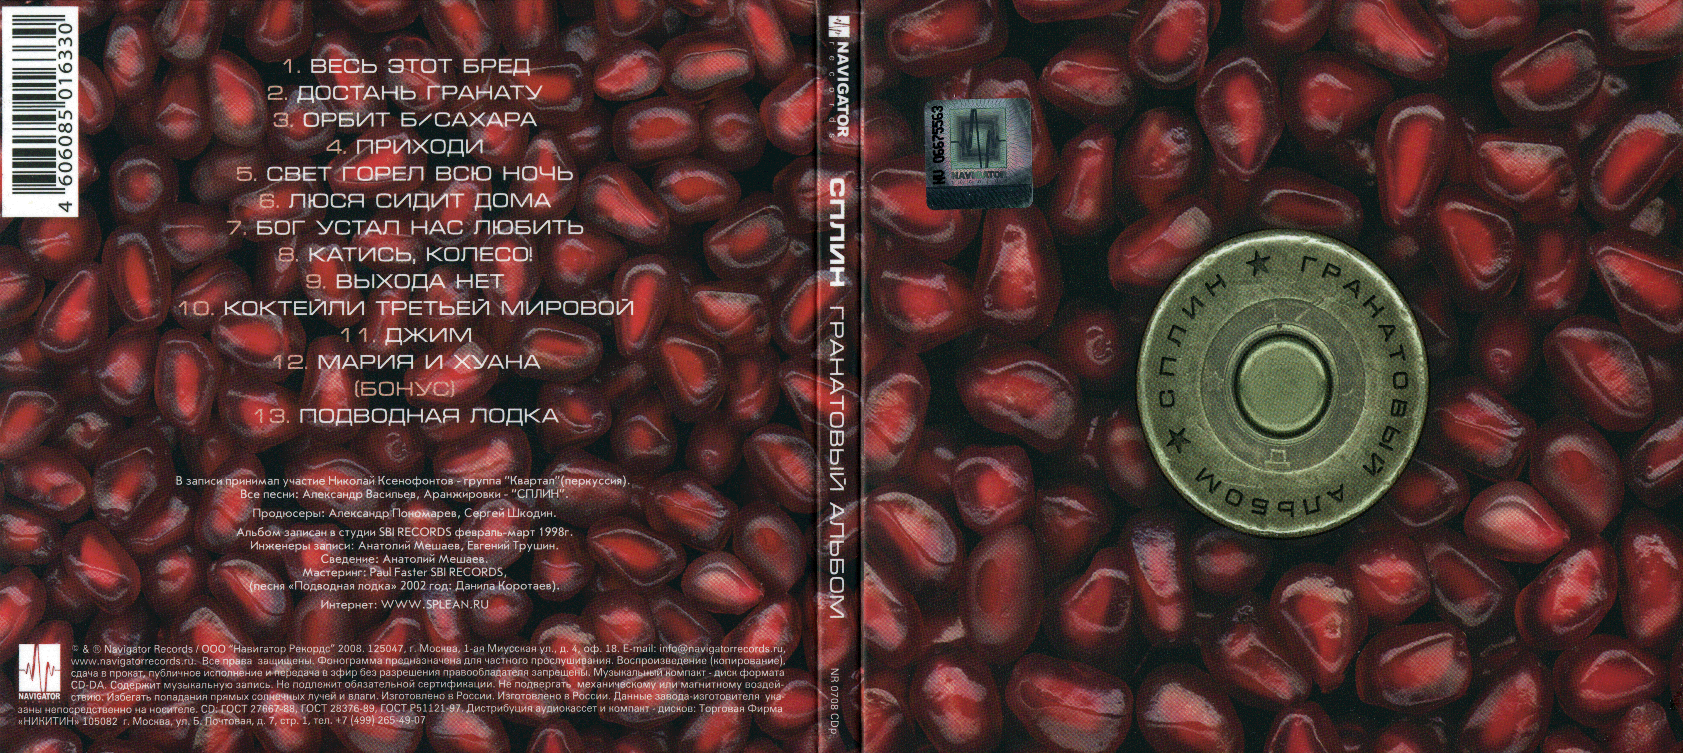 Сплин без сахара текст. Сплин гранатовый альбом (1998) альбом. Гранатовый альбом Сплин рок 1998. 1998 - Гранатовый альбом. Сплин гранатовый альбом обложка.